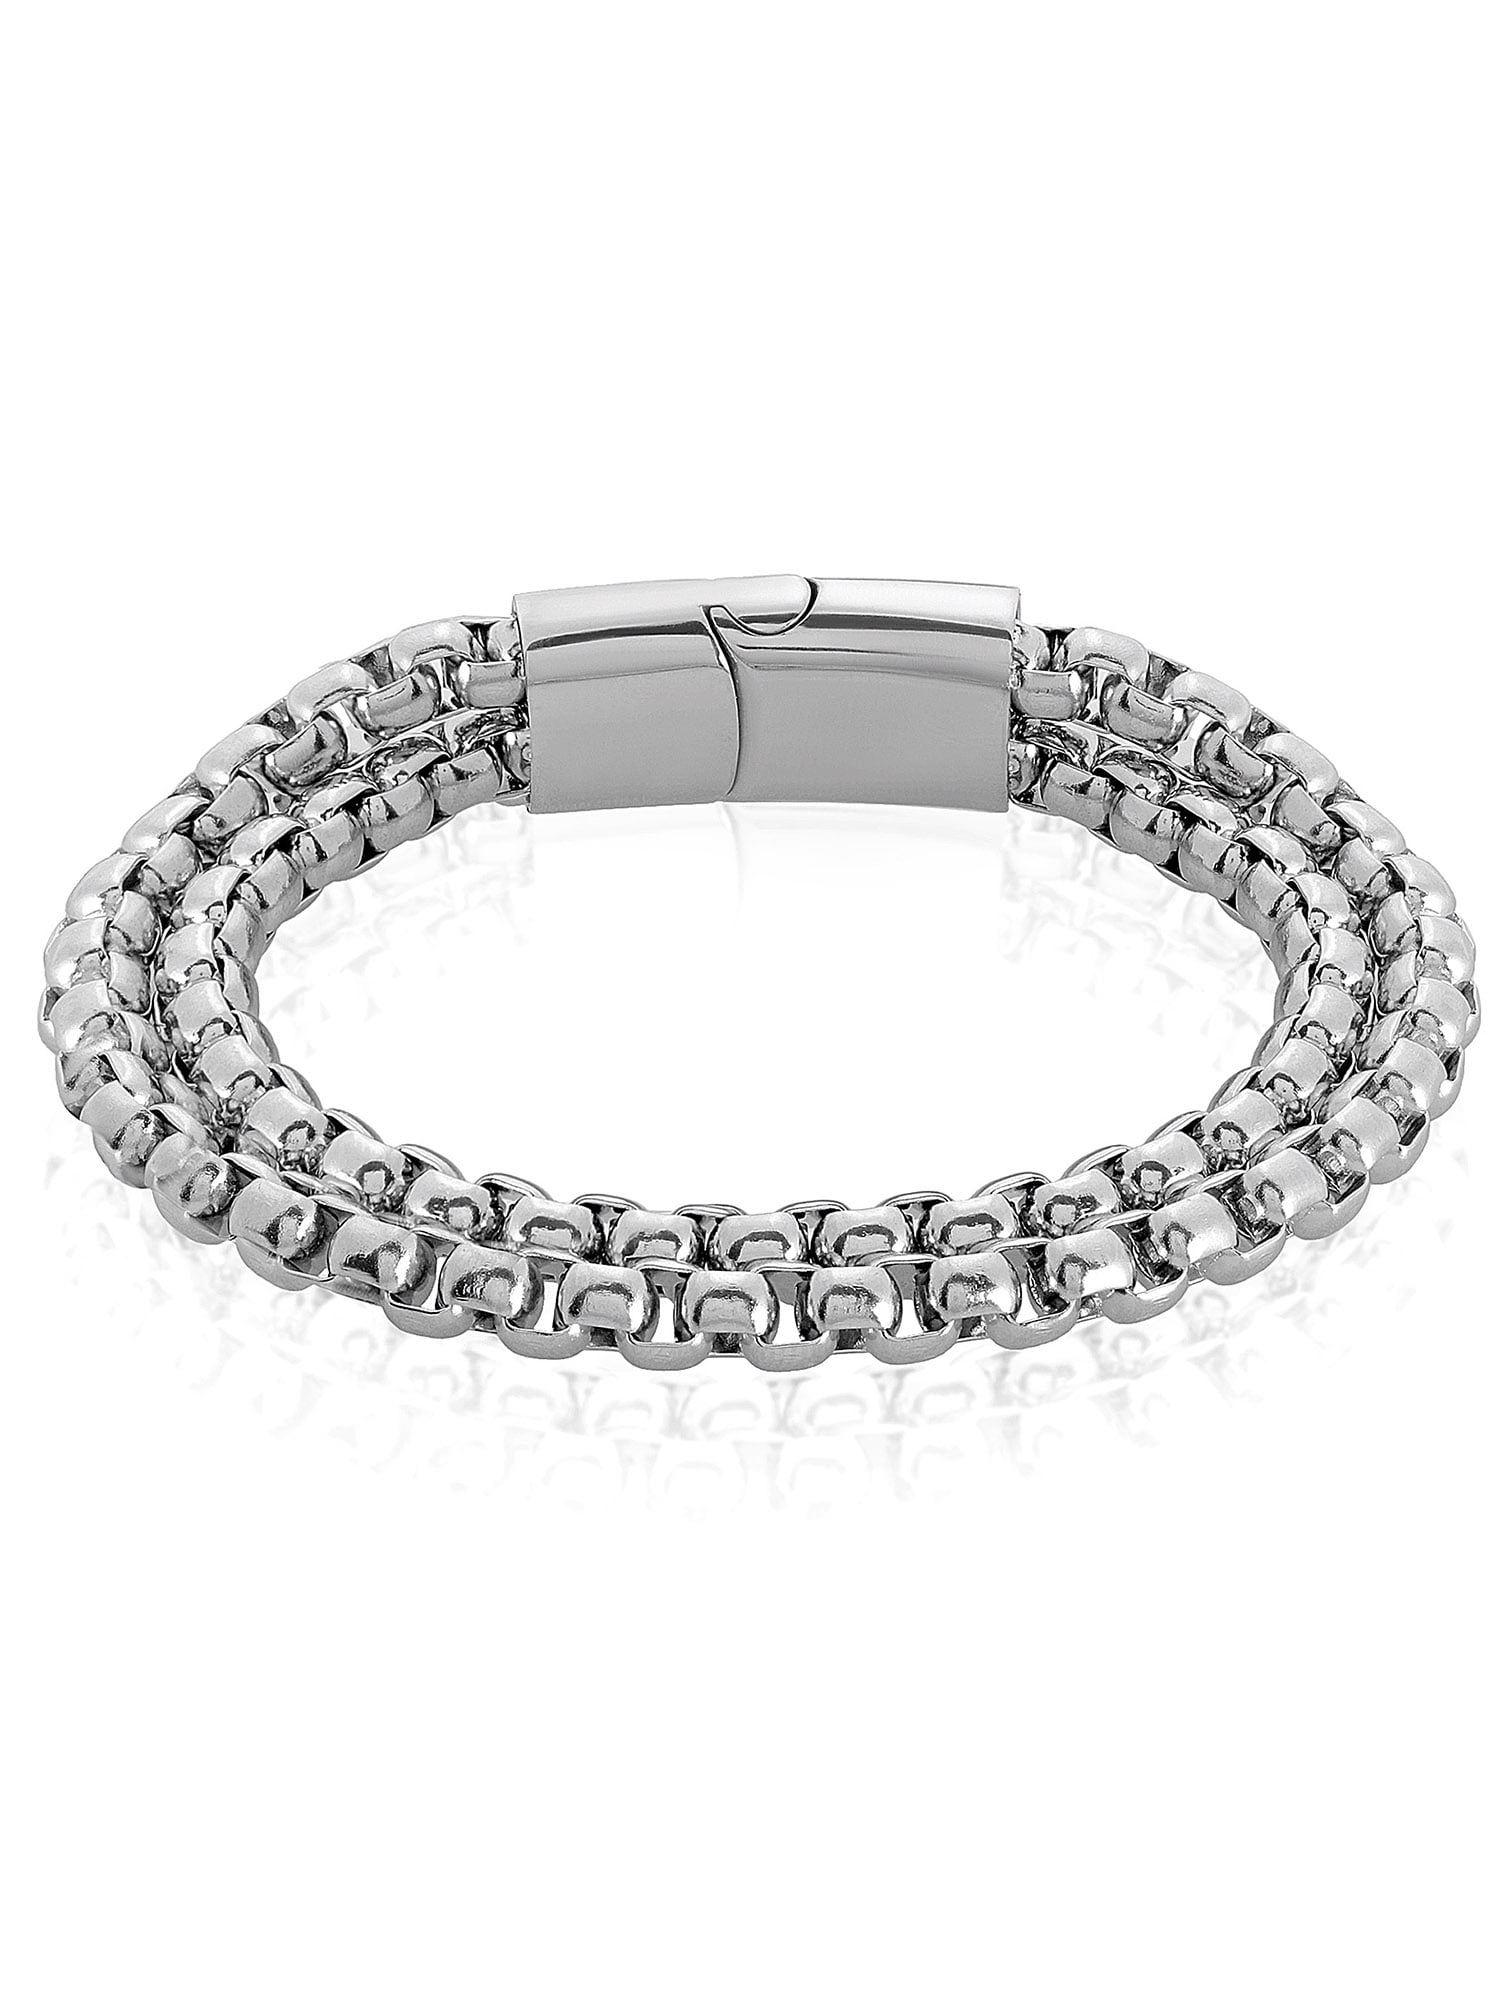 Coastal Jewelry - Stainless Steel Box Chain Bracelet (11mm) - 8.5 ...